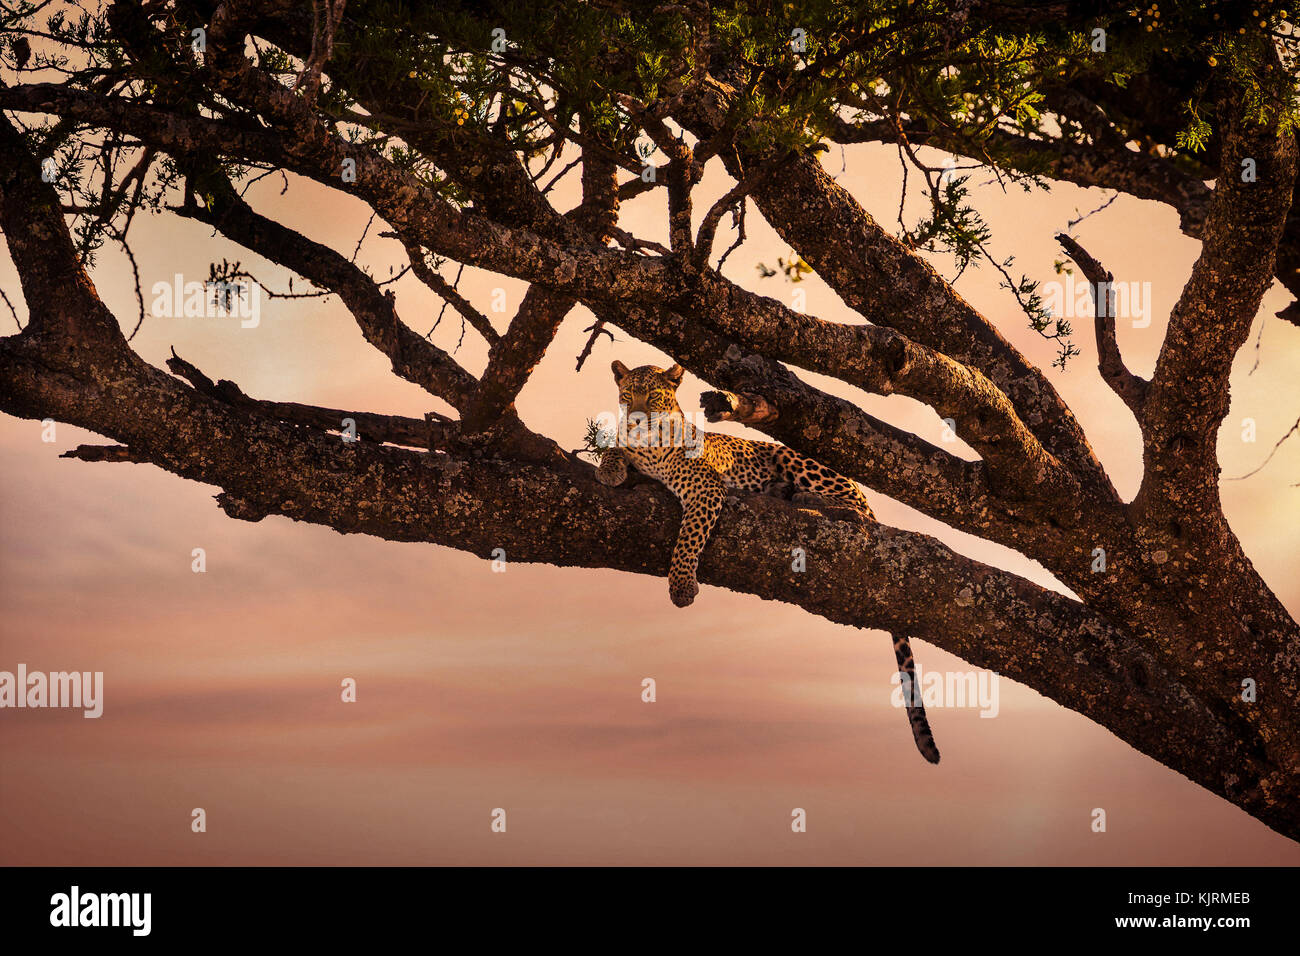 El leopardo descansa en un árbol al atardecer Foto de stock